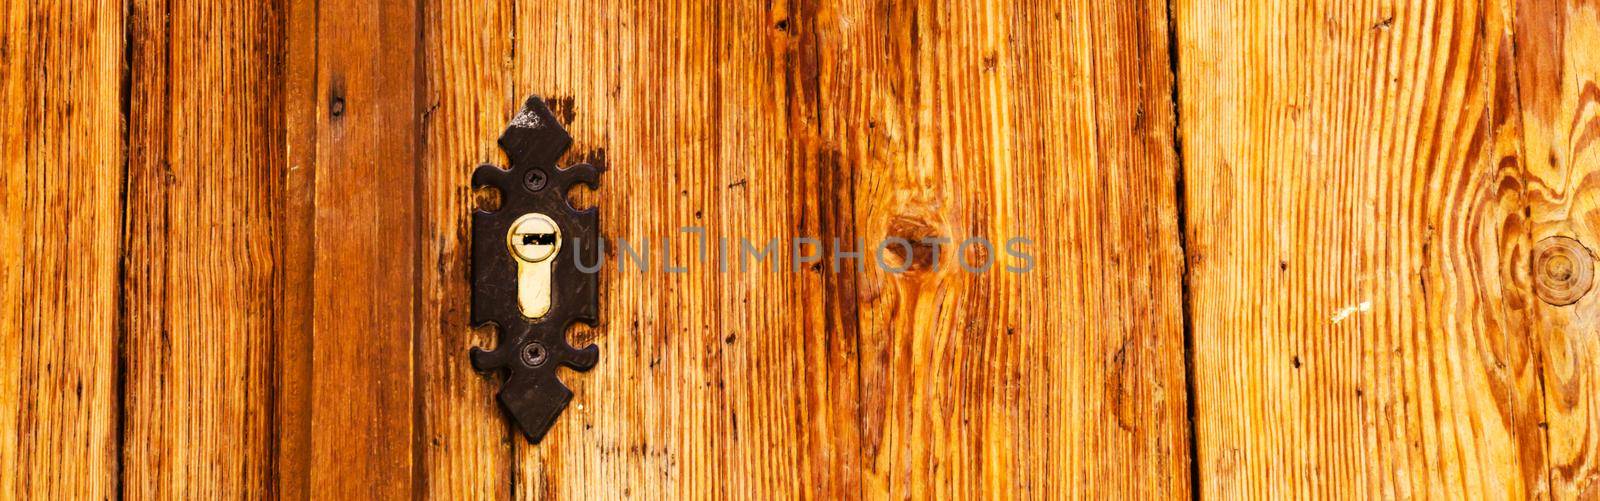 old door lock, aged wooden door, home security by Q77photo